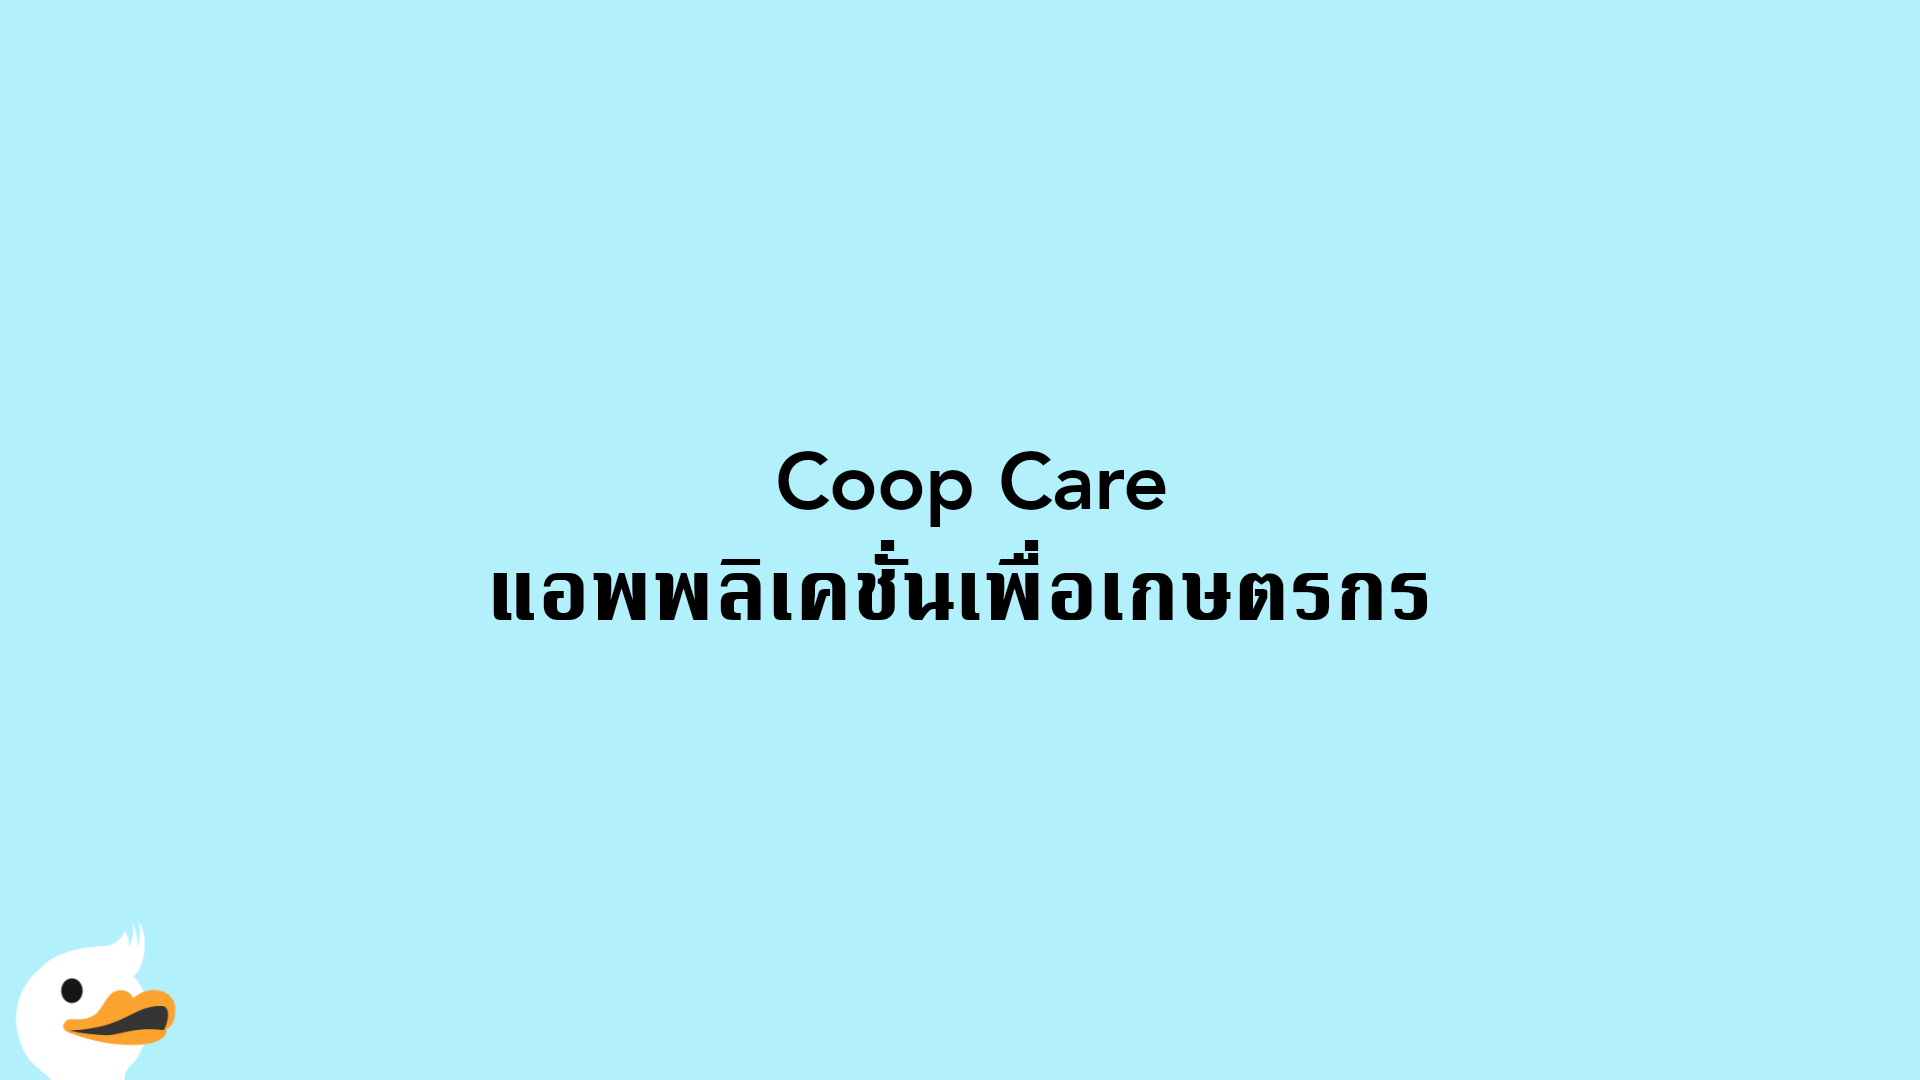 ​ Coop Care แอพพลิเคชั่นเพื่อเกษตรกร